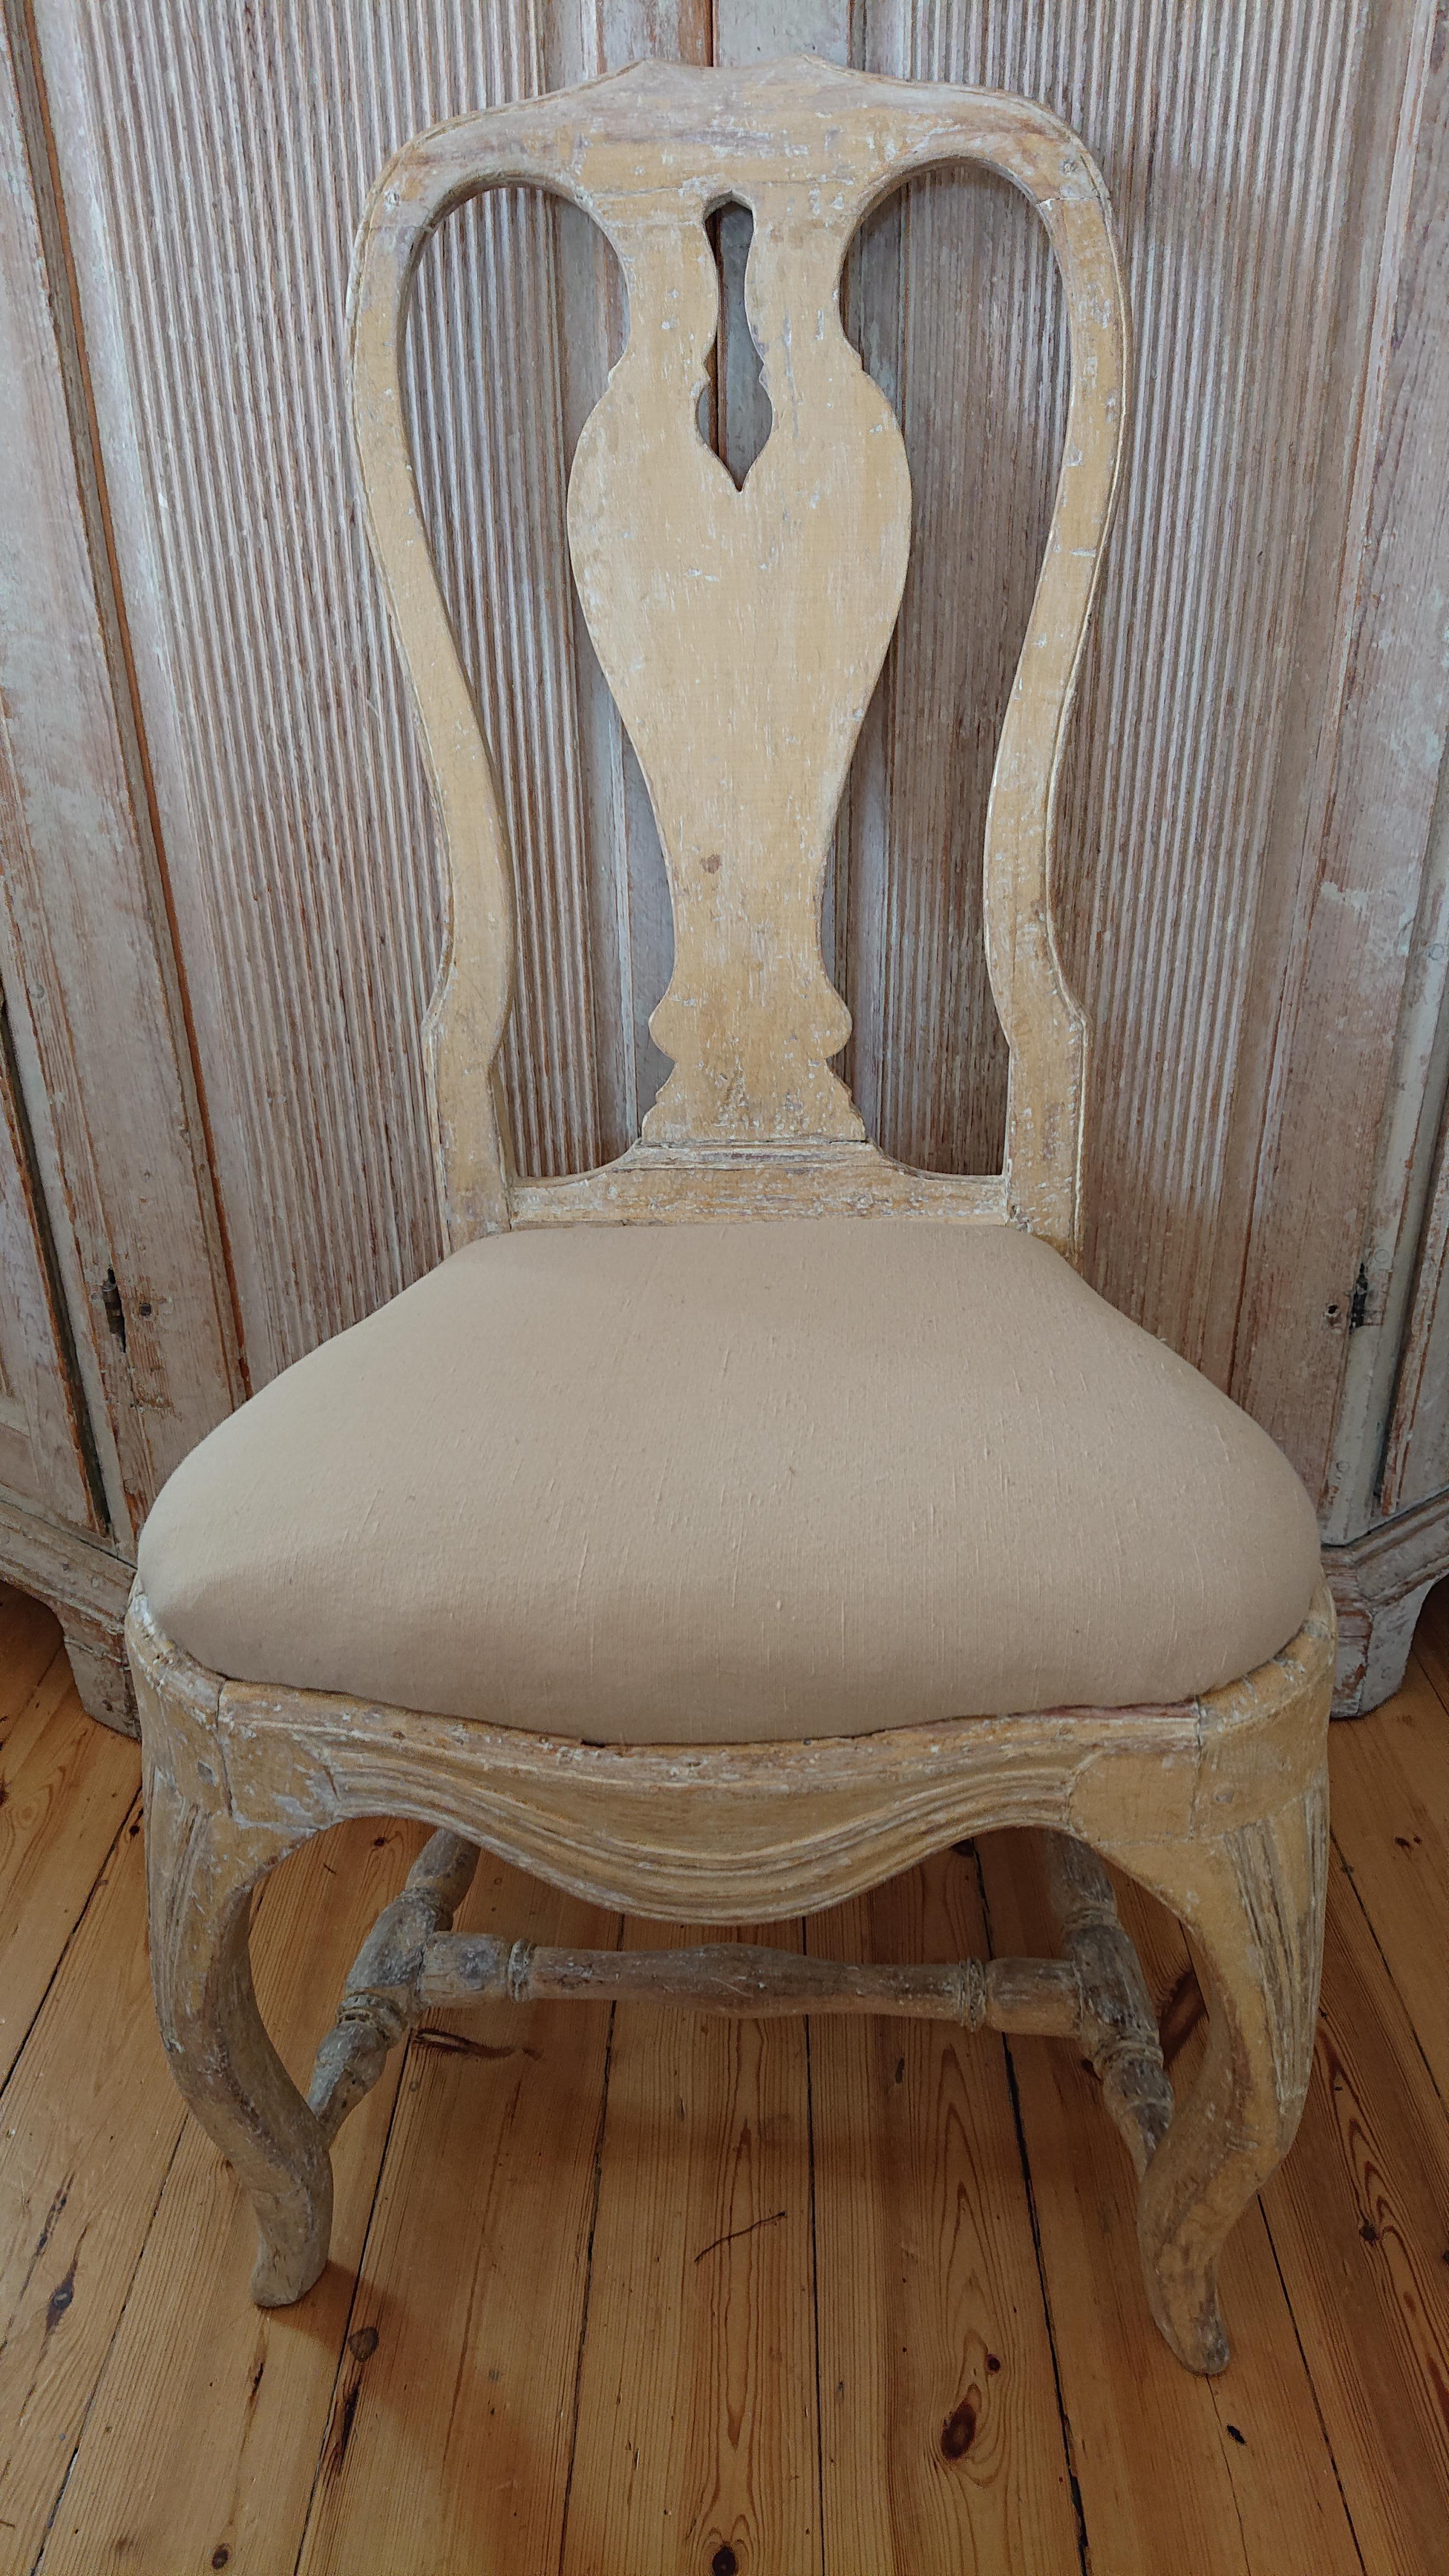 schwedischer Rokokostuhl des 18. Jahrhunderts aus Stockholm, 
Südschweden.
Ein fantastischer Stuhl mit schönen Proportionen und geschwungenen Beinen 
Sie stammt aus dem Umfeld der Oberschicht.
Von Hand geschabt, um die gut erhaltene